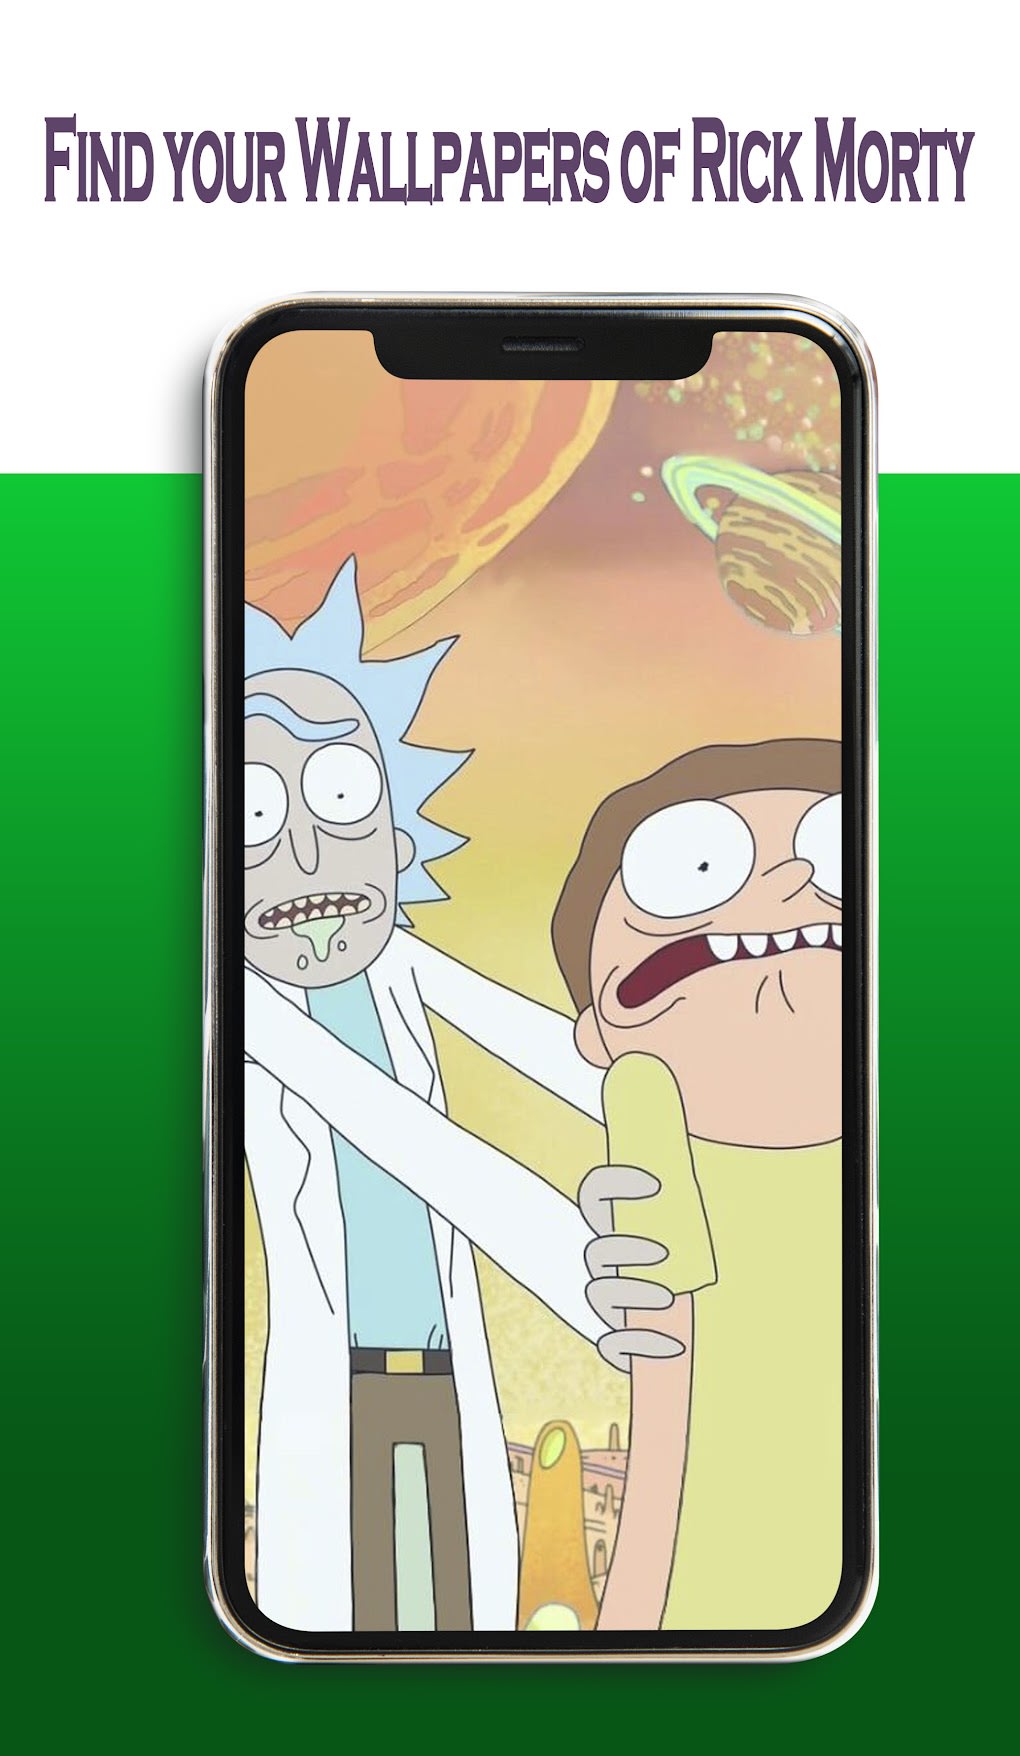 Rick And Morty Wallpaper 4K para Android - Download